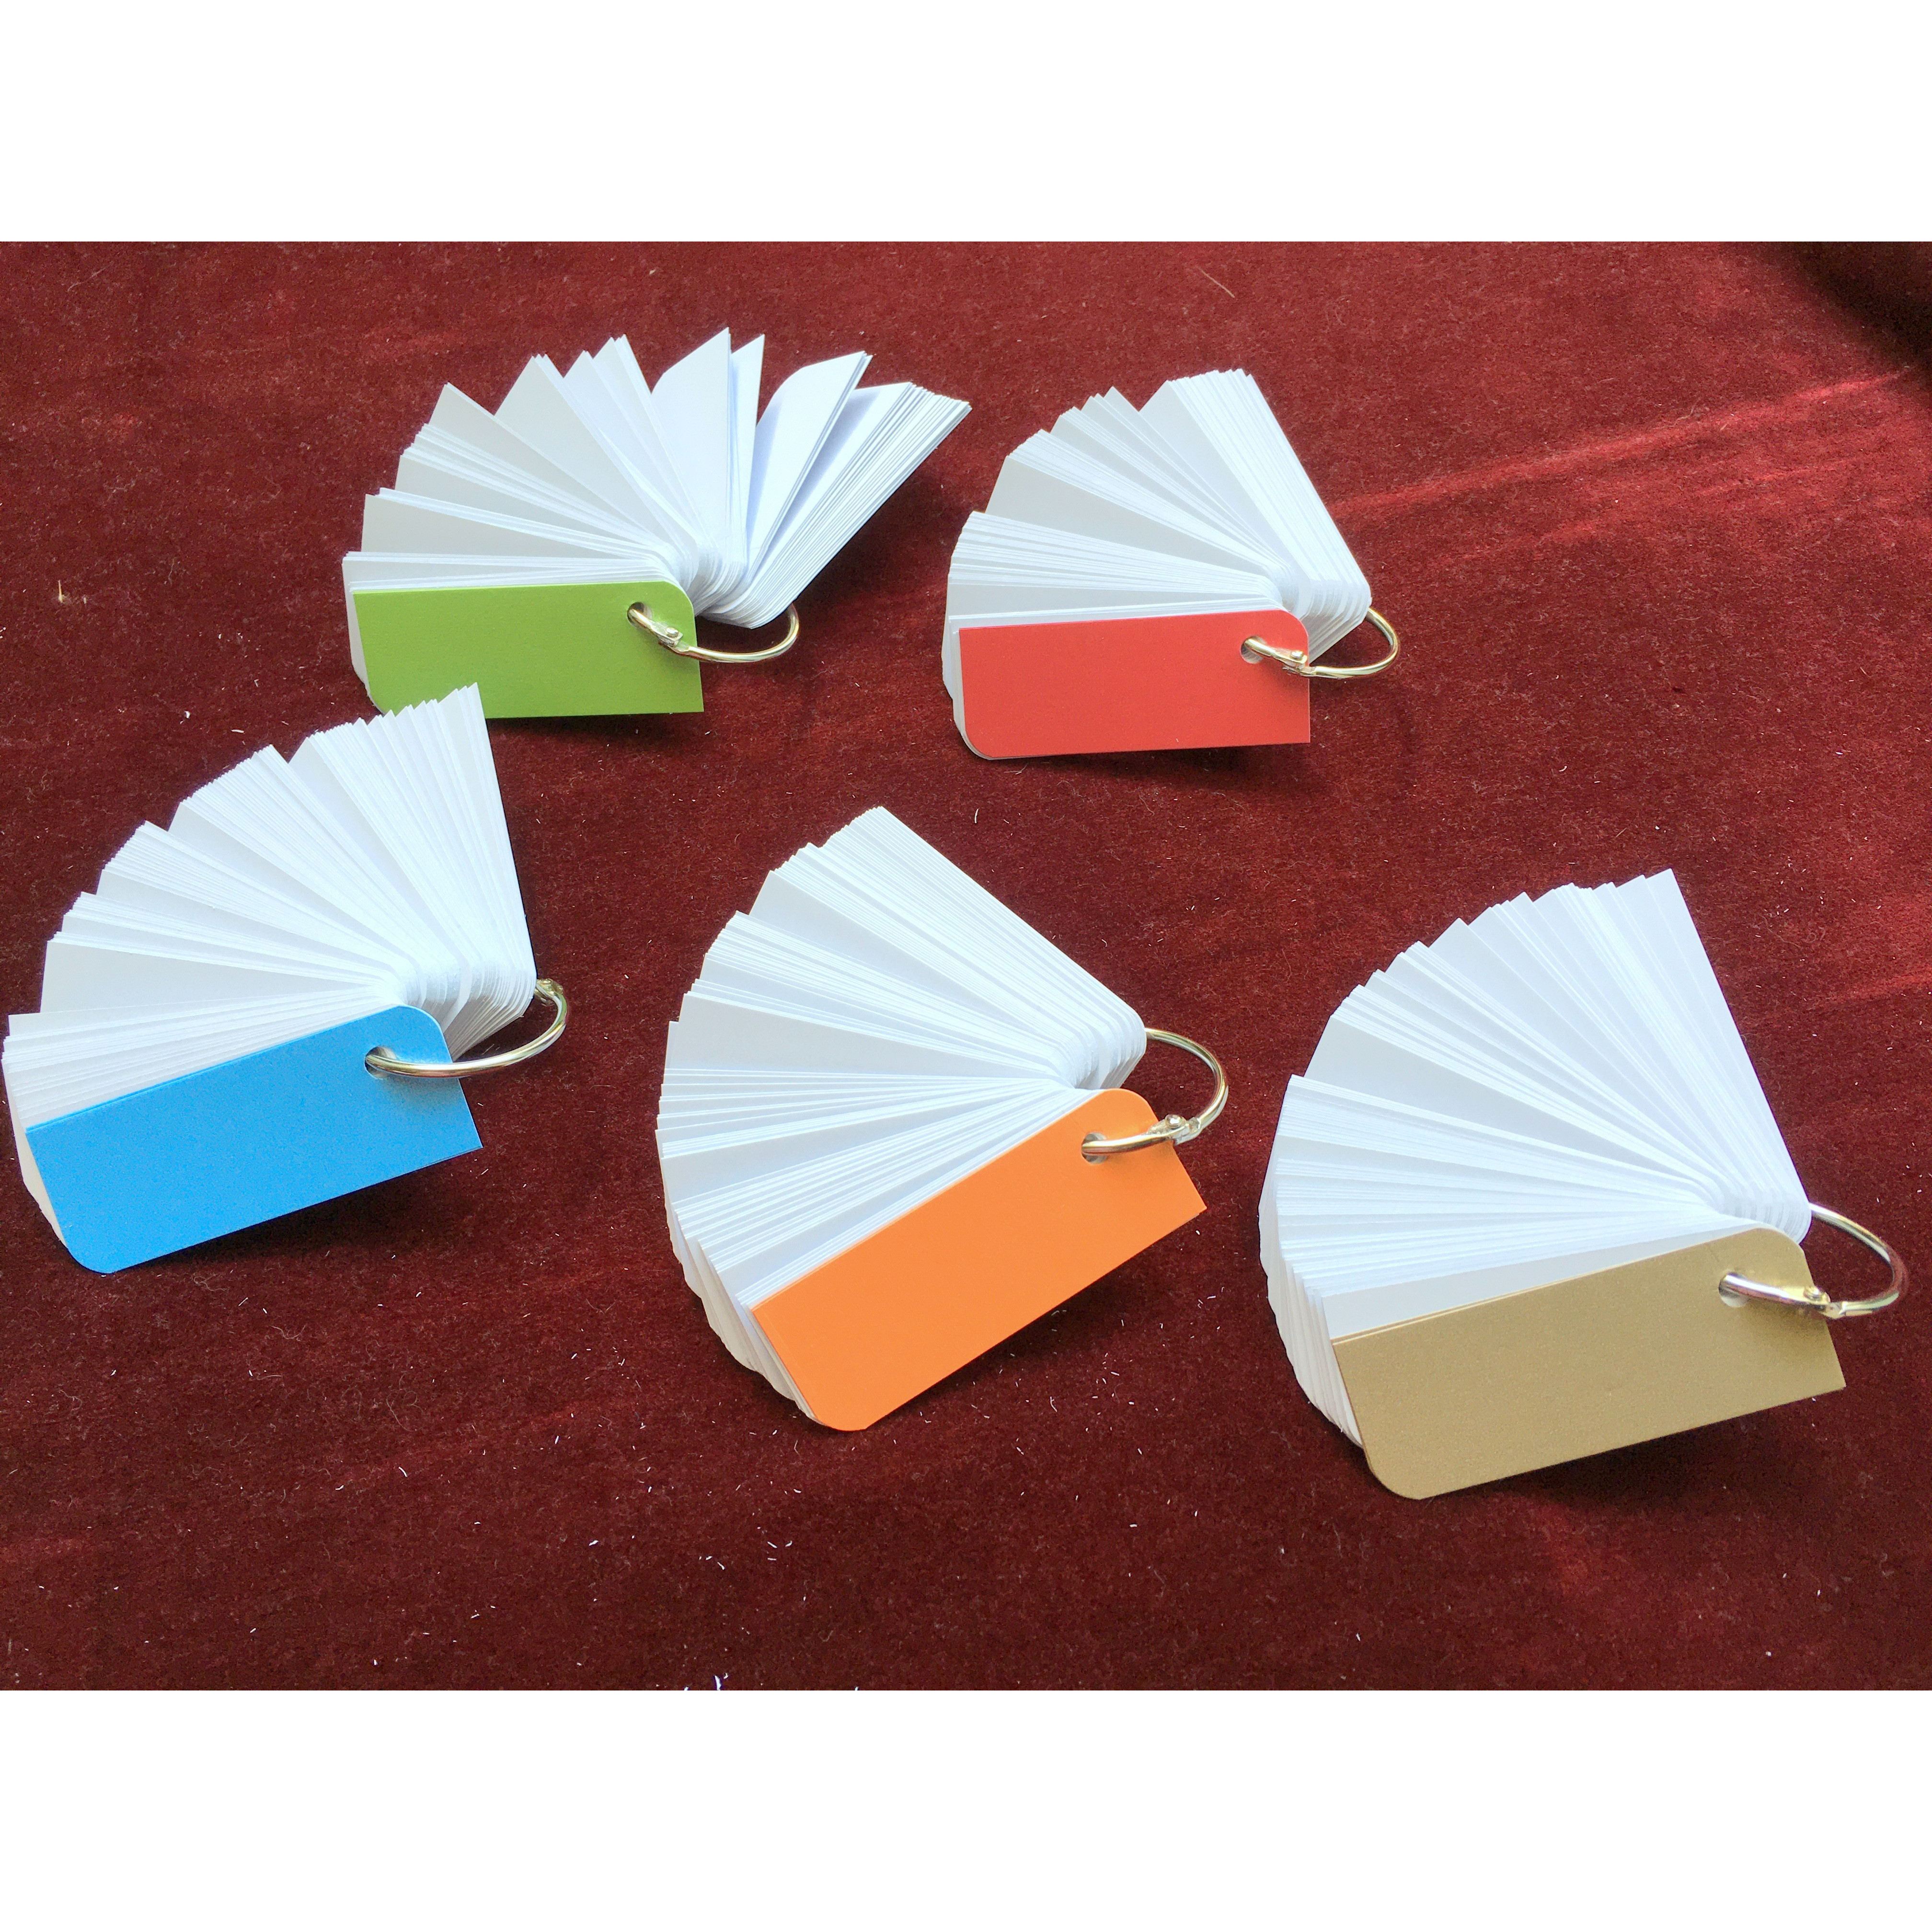 5 bộ thẻ flashcard trắng mỗi xấp 100 thẻ 3x8 SIÊU DÀY VÀ SIÊU CỨNG giấy ivory 350gsm//bristol 350gsm tặng kèm 5 khoen 4cm và 10 bìa ánh kim 4D dùng để ghi từ vựng  (giấy giao ngẫu nhiên)